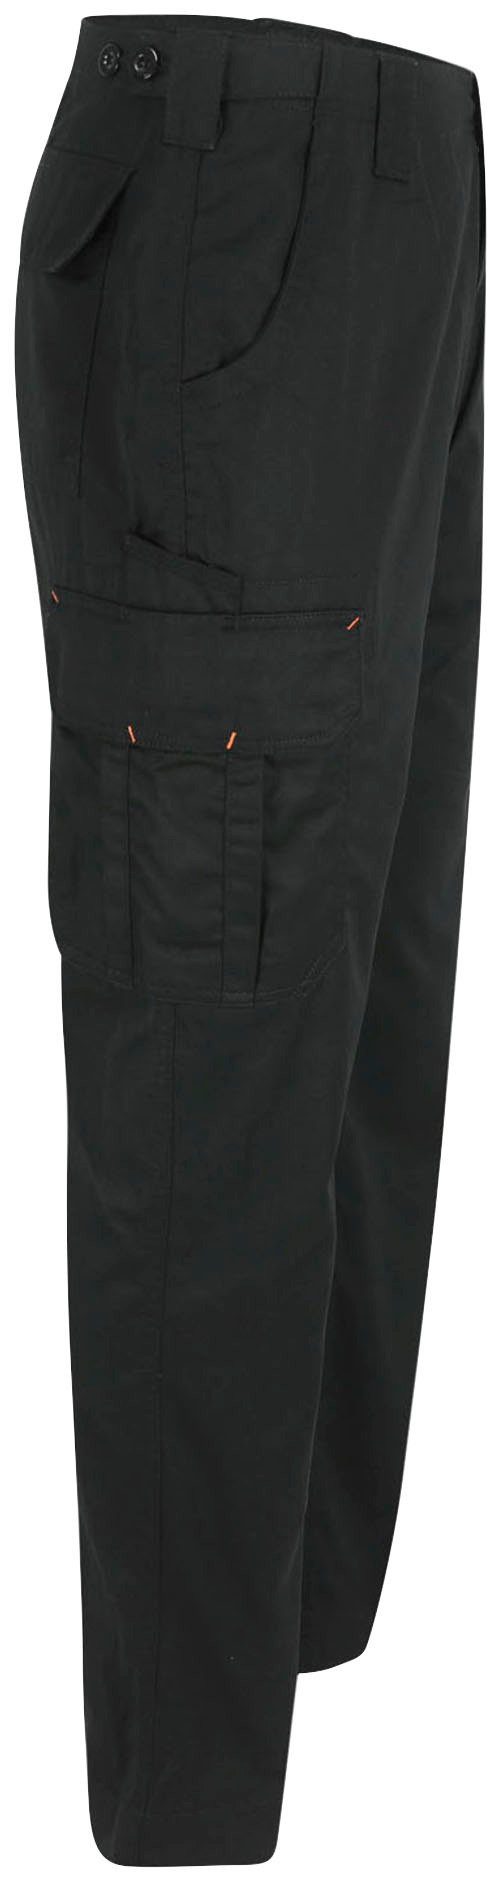 Arbeitshose Farben Bund, viele leicht, einstellbarer Hose Taschen, Herock Thor 7 Wasserabweisend, schwarz